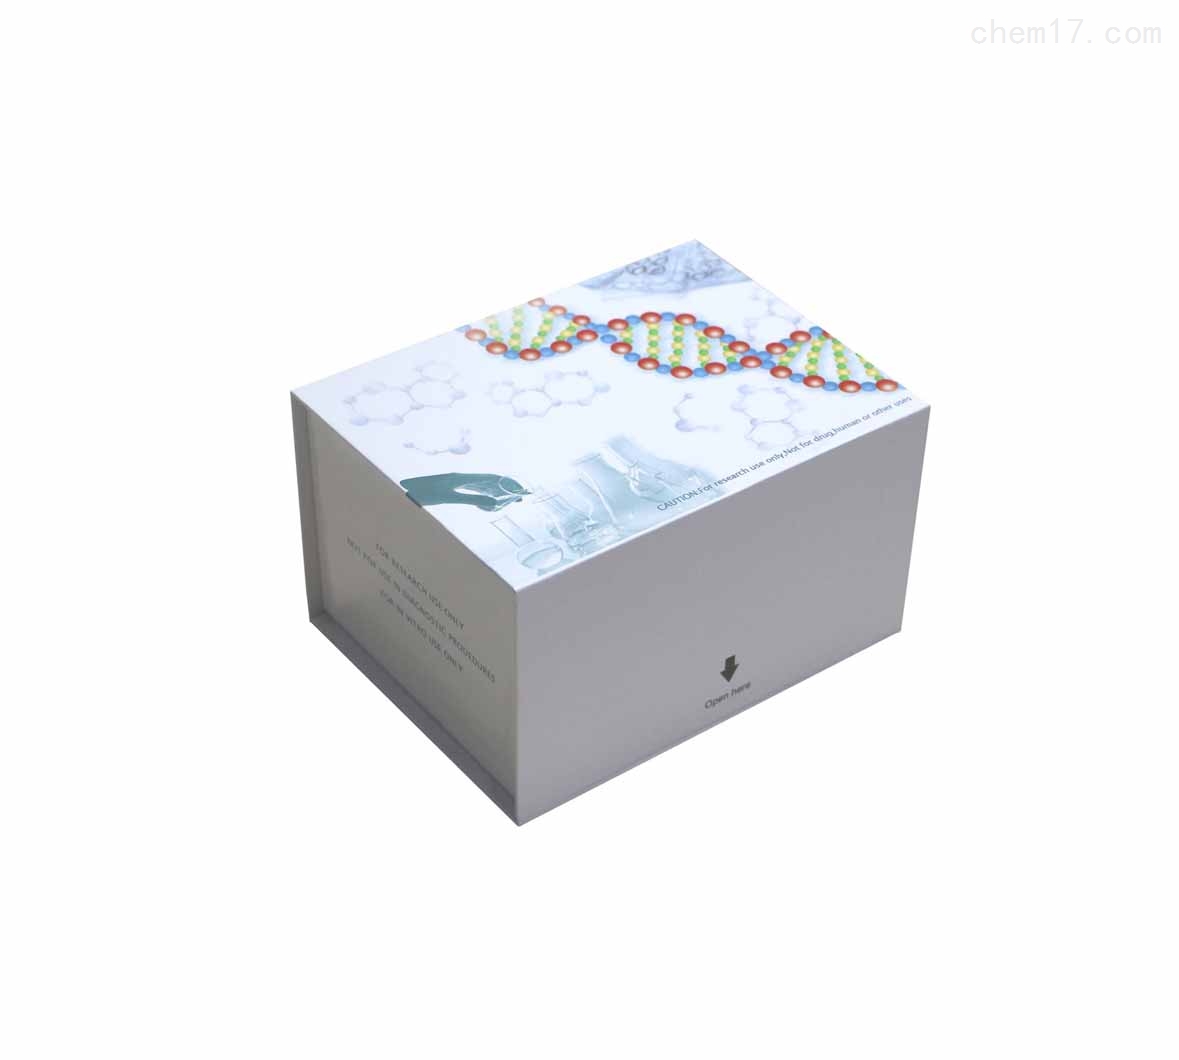 人白细胞介素6(IL-6)ELISA试剂盒SCI文章